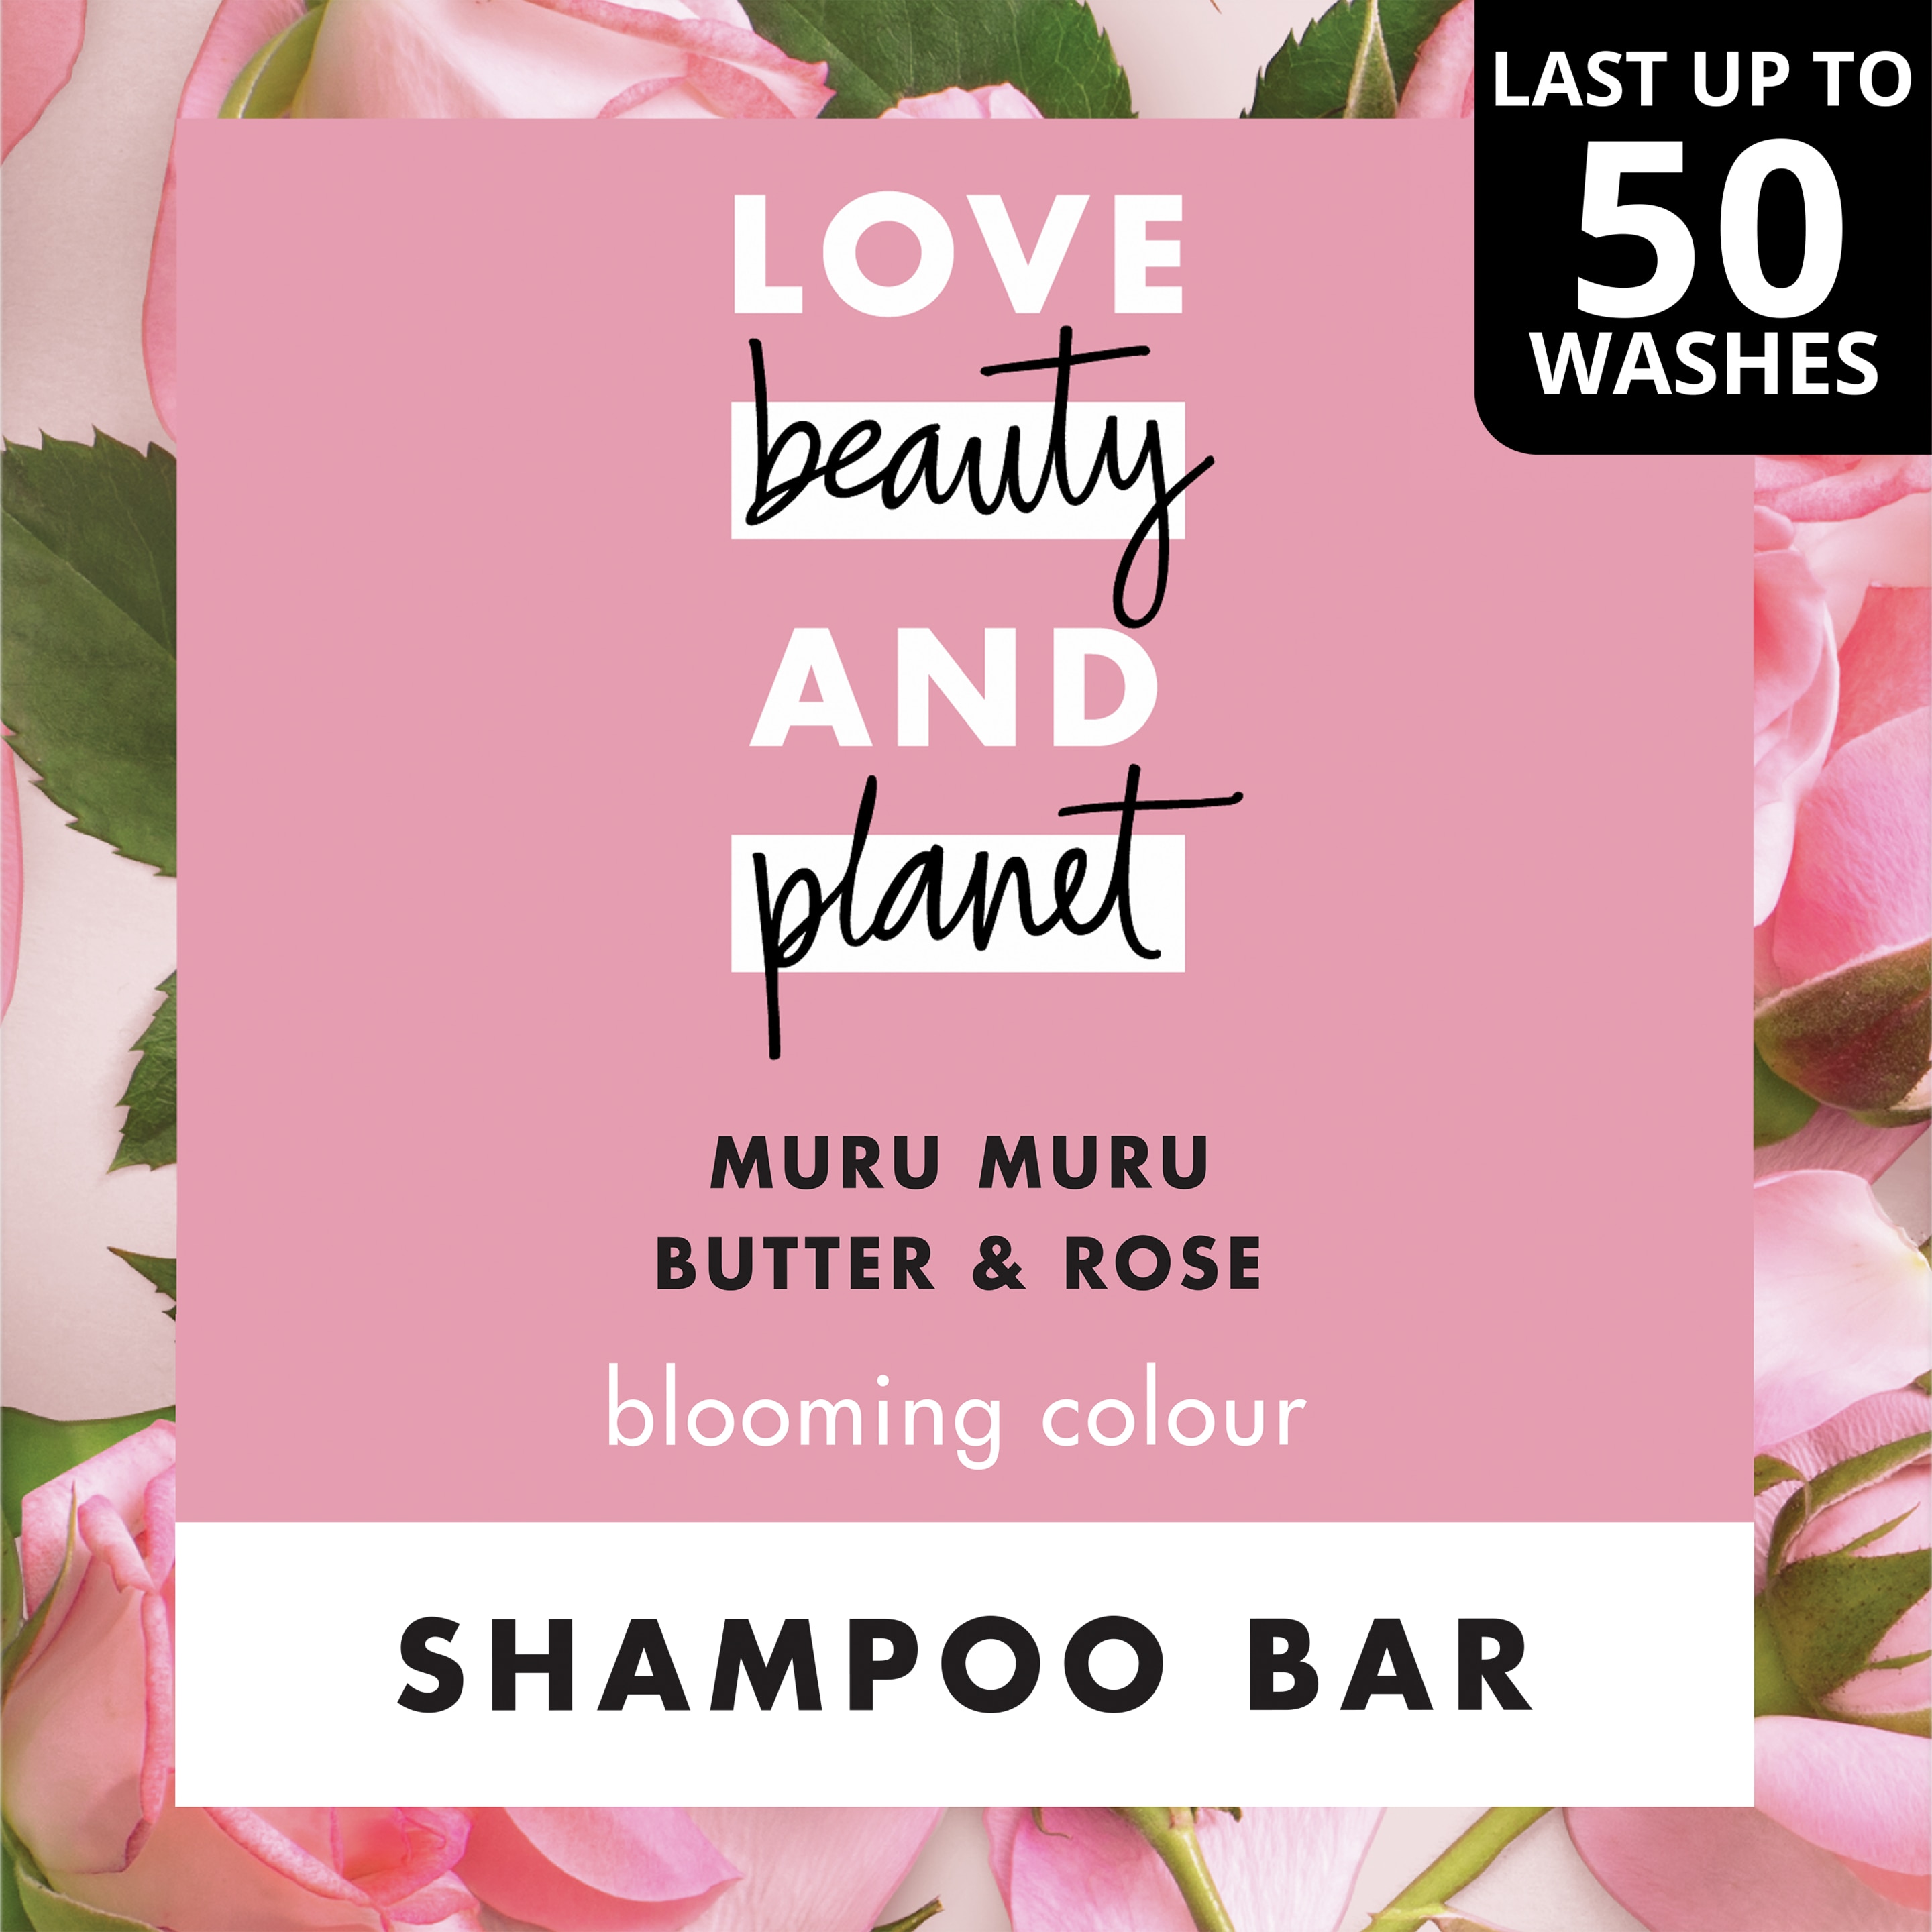 Muru Muru Butter & Rose Shampoo Bar Text